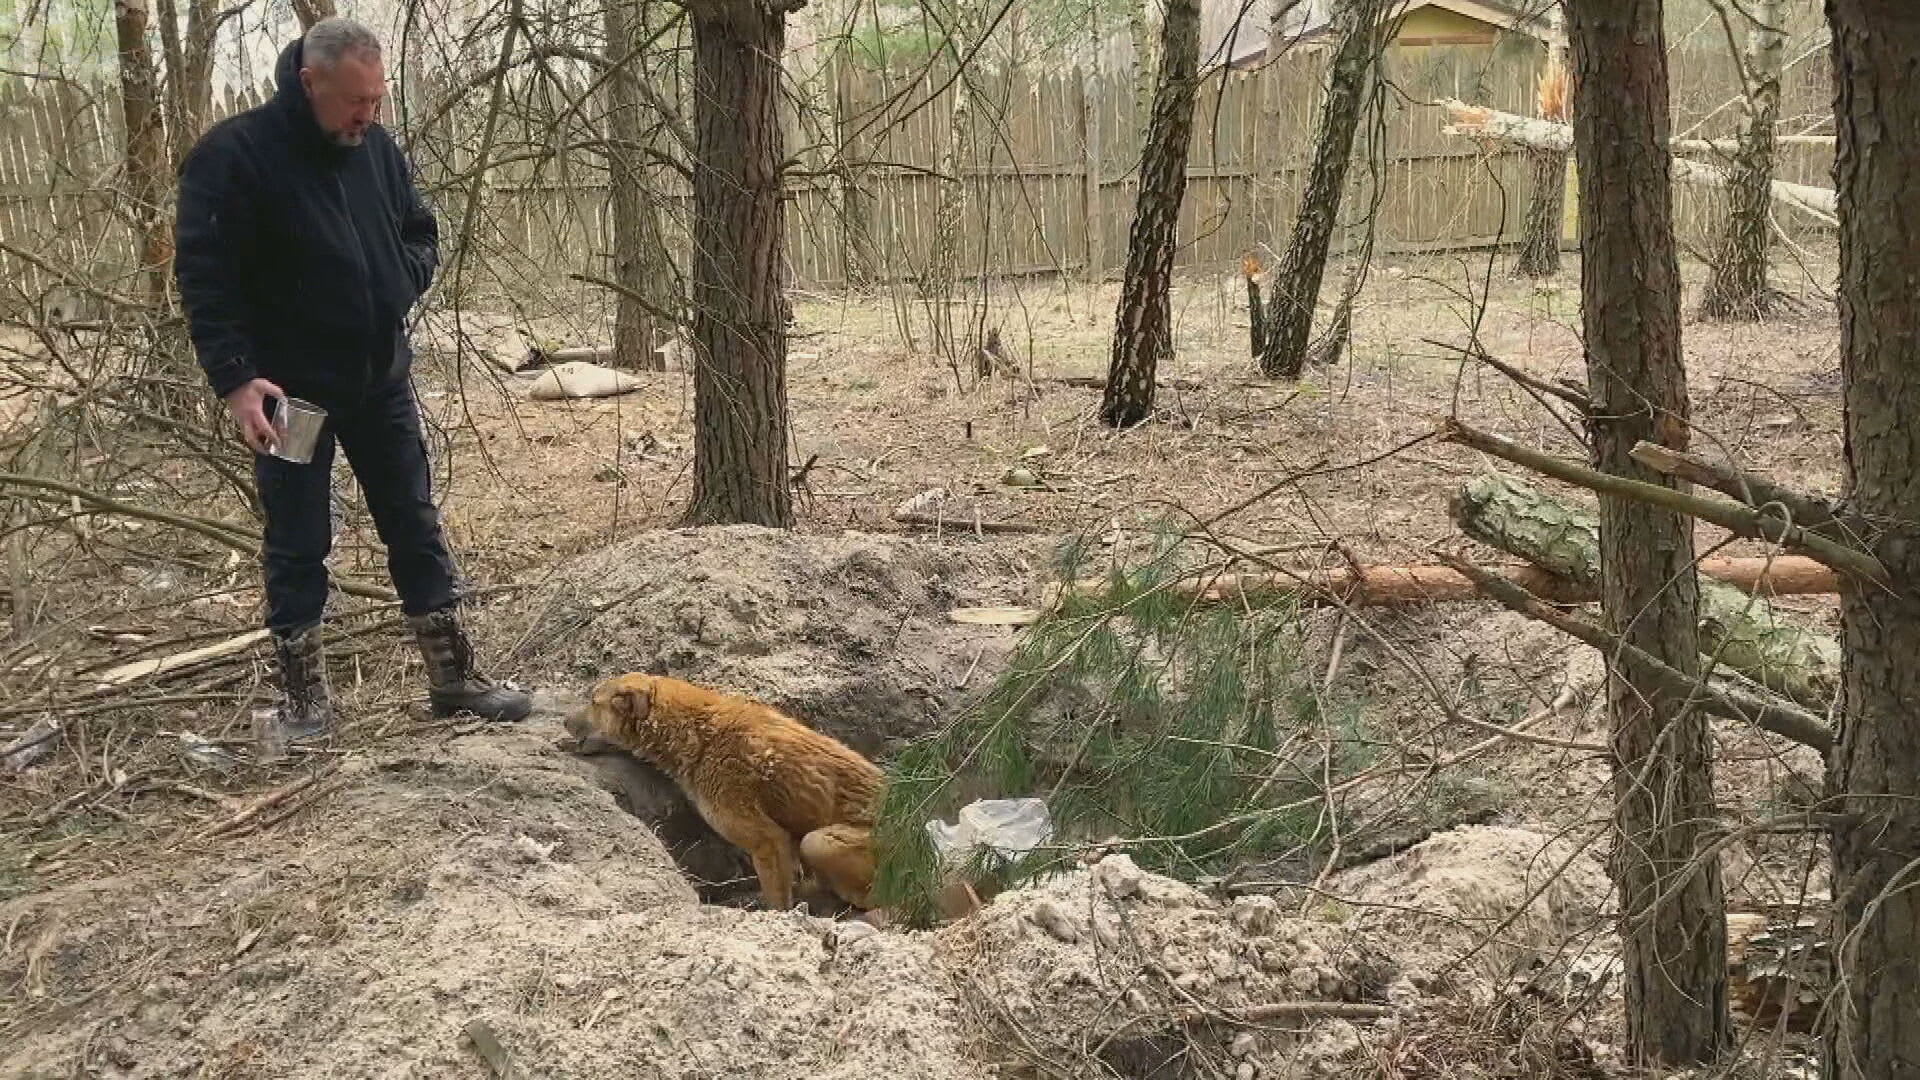 Tohoto psa podle obyvatel Berezivky chytli ruští vojáci a kopali do něj. Zvíře má zlomenou kyčel